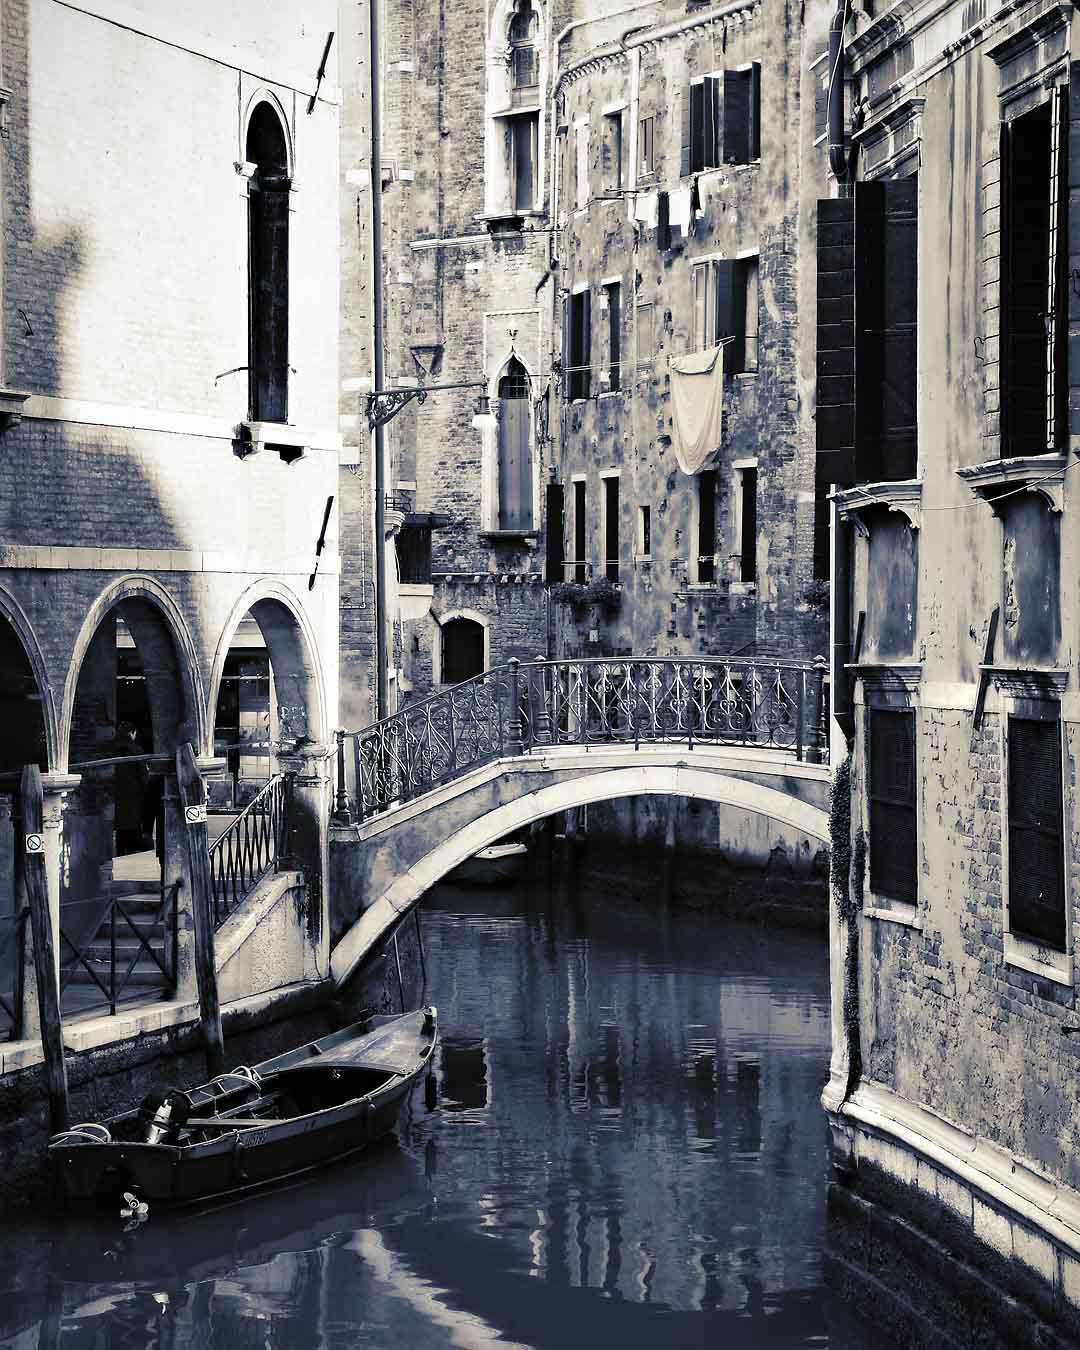 Canale di Cannaregio #11, Venice, Italy, 2008